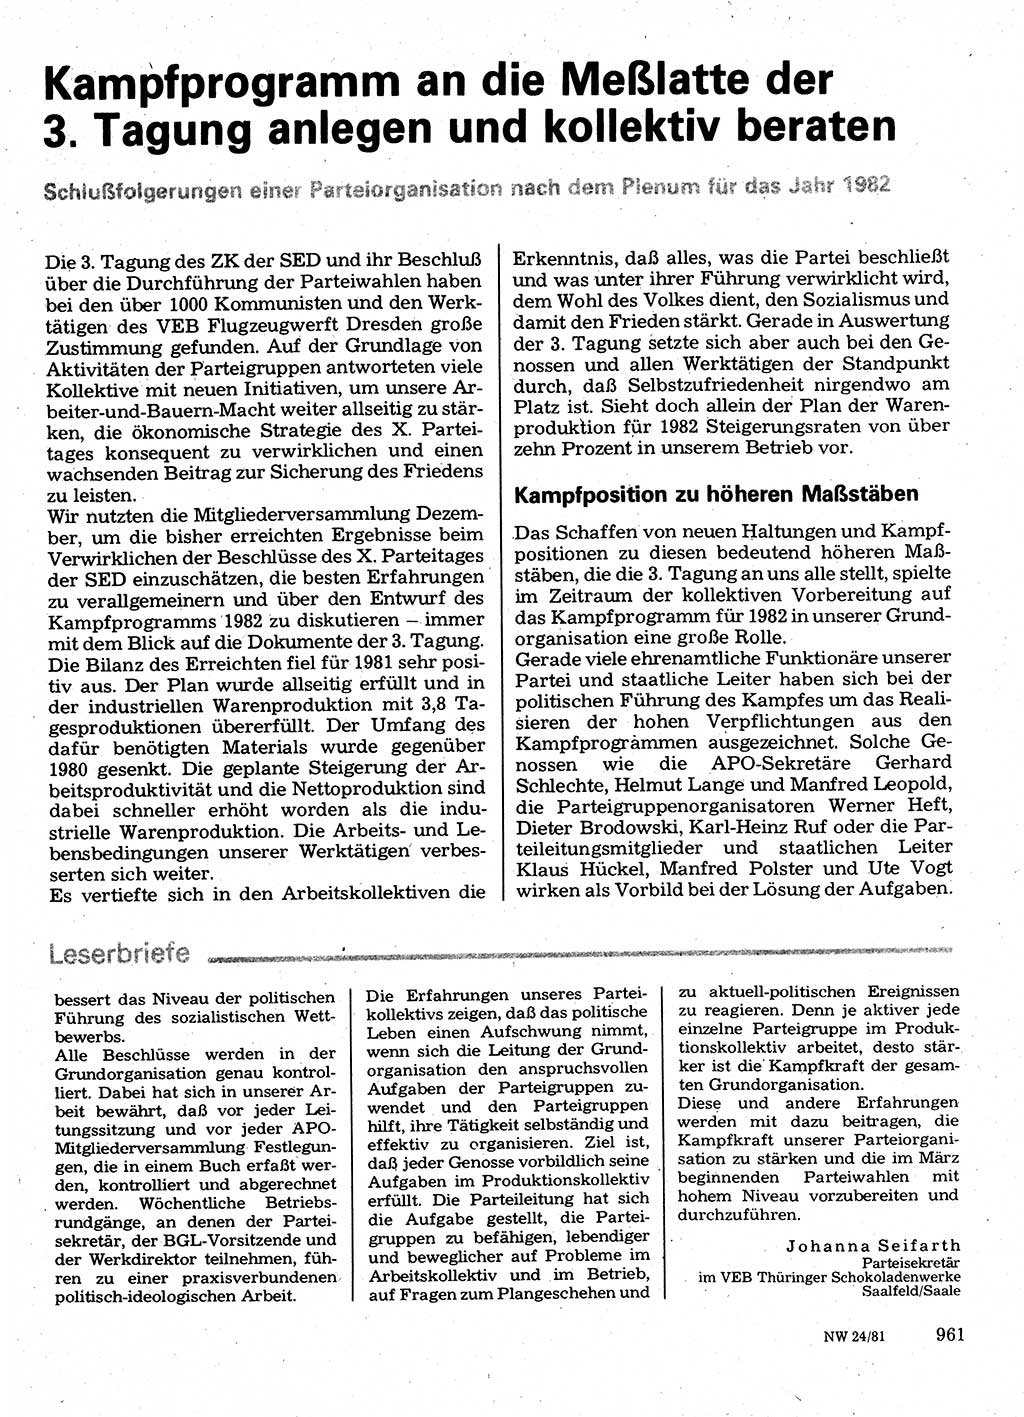 Neuer Weg (NW), Organ des Zentralkomitees (ZK) der SED (Sozialistische Einheitspartei Deutschlands) für Fragen des Parteilebens, 36. Jahrgang [Deutsche Demokratische Republik (DDR)] 1981, Seite 961 (NW ZK SED DDR 1981, S. 961)